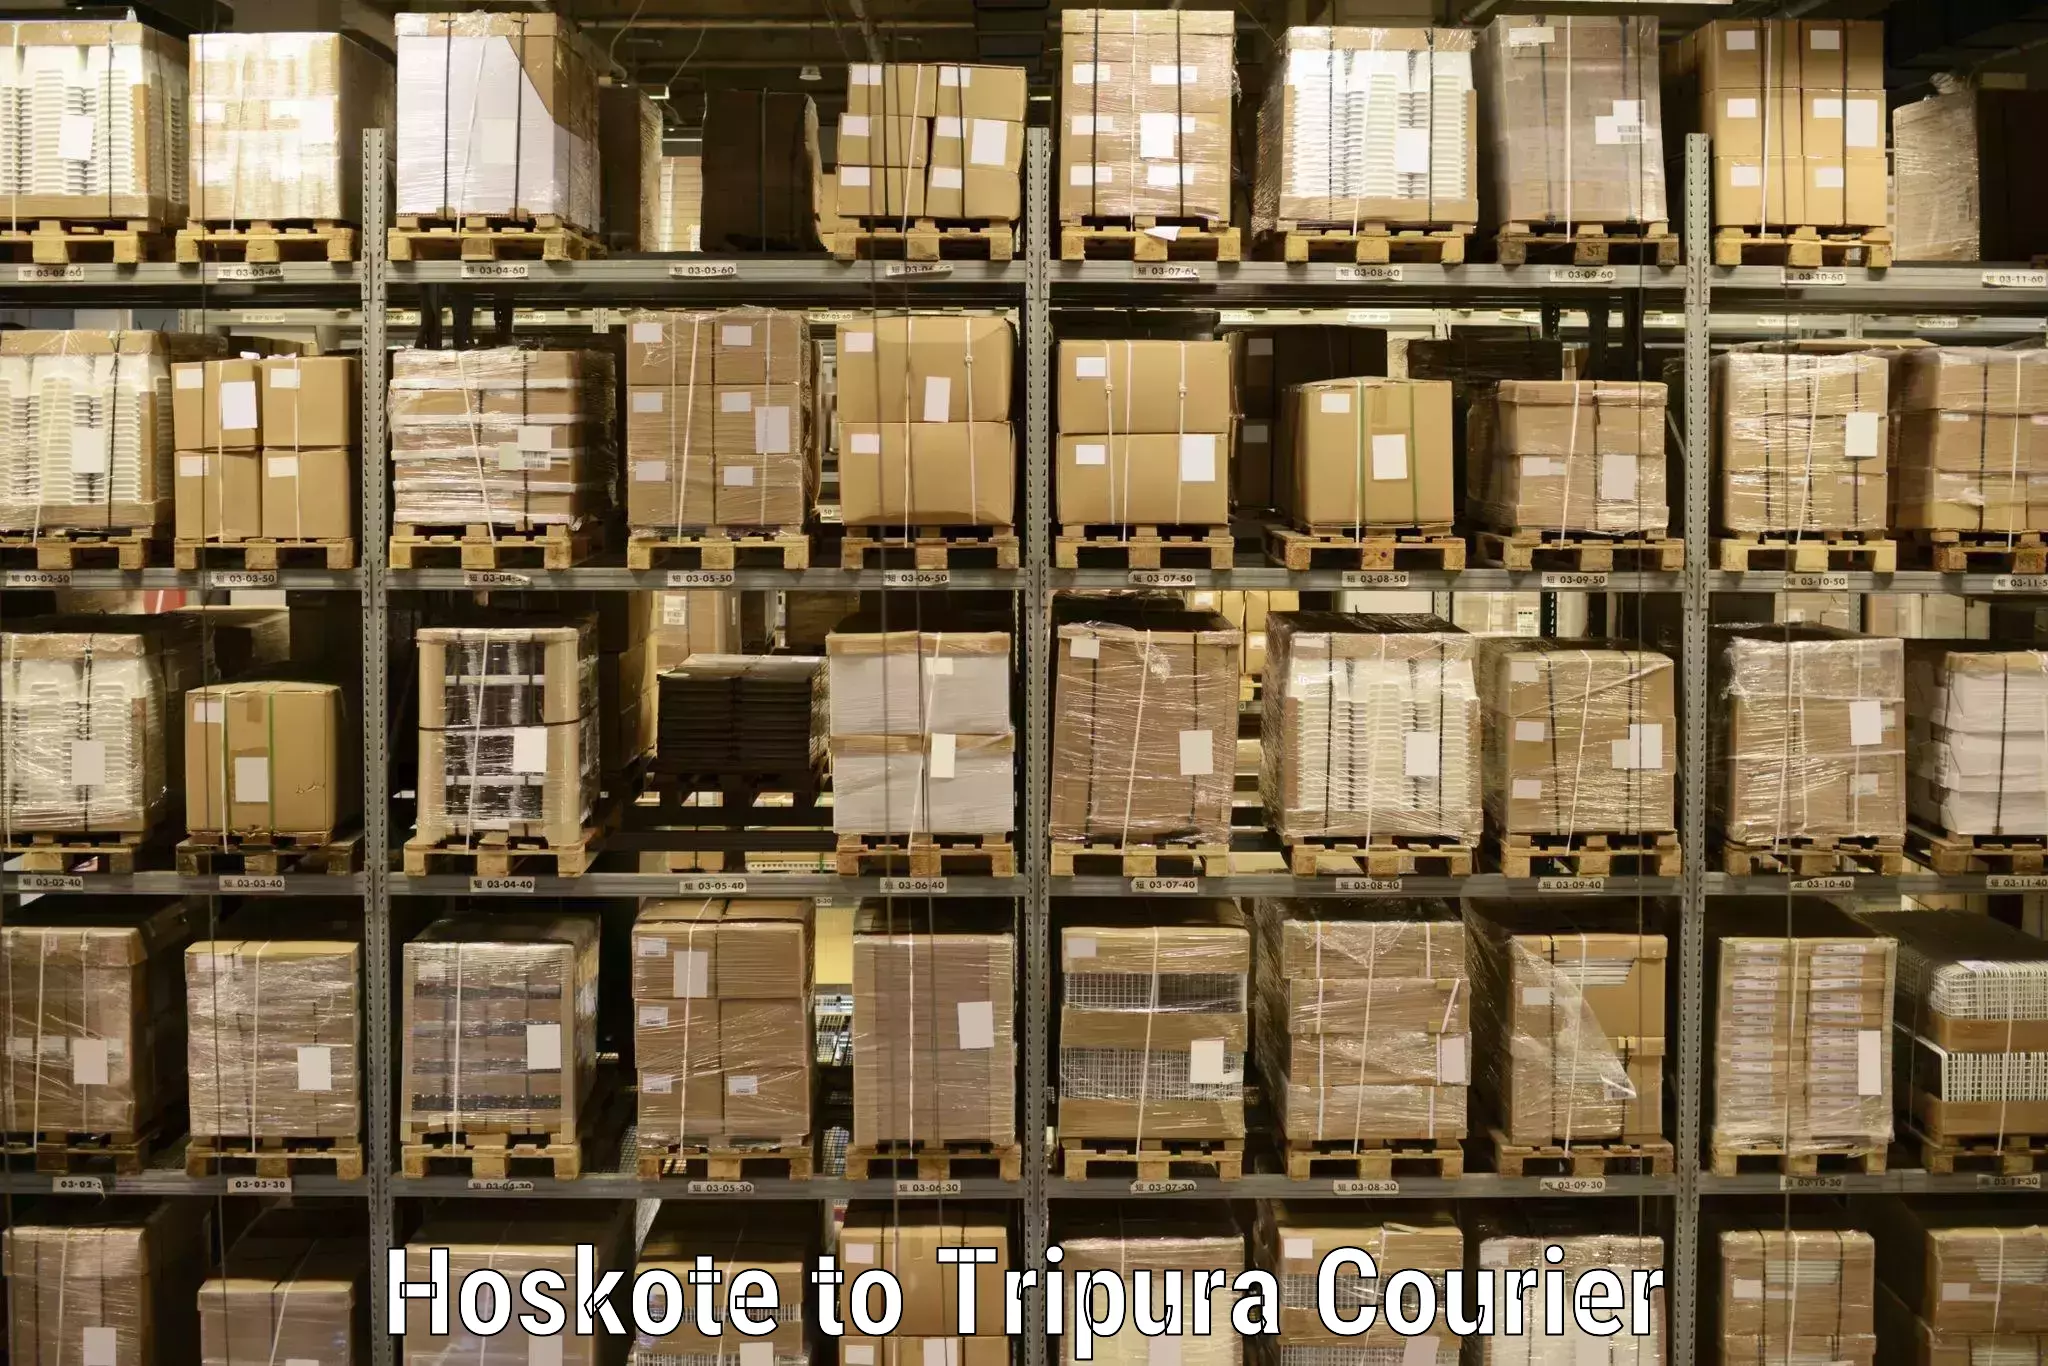 Doorstep delivery service Hoskote to IIIT Agartala